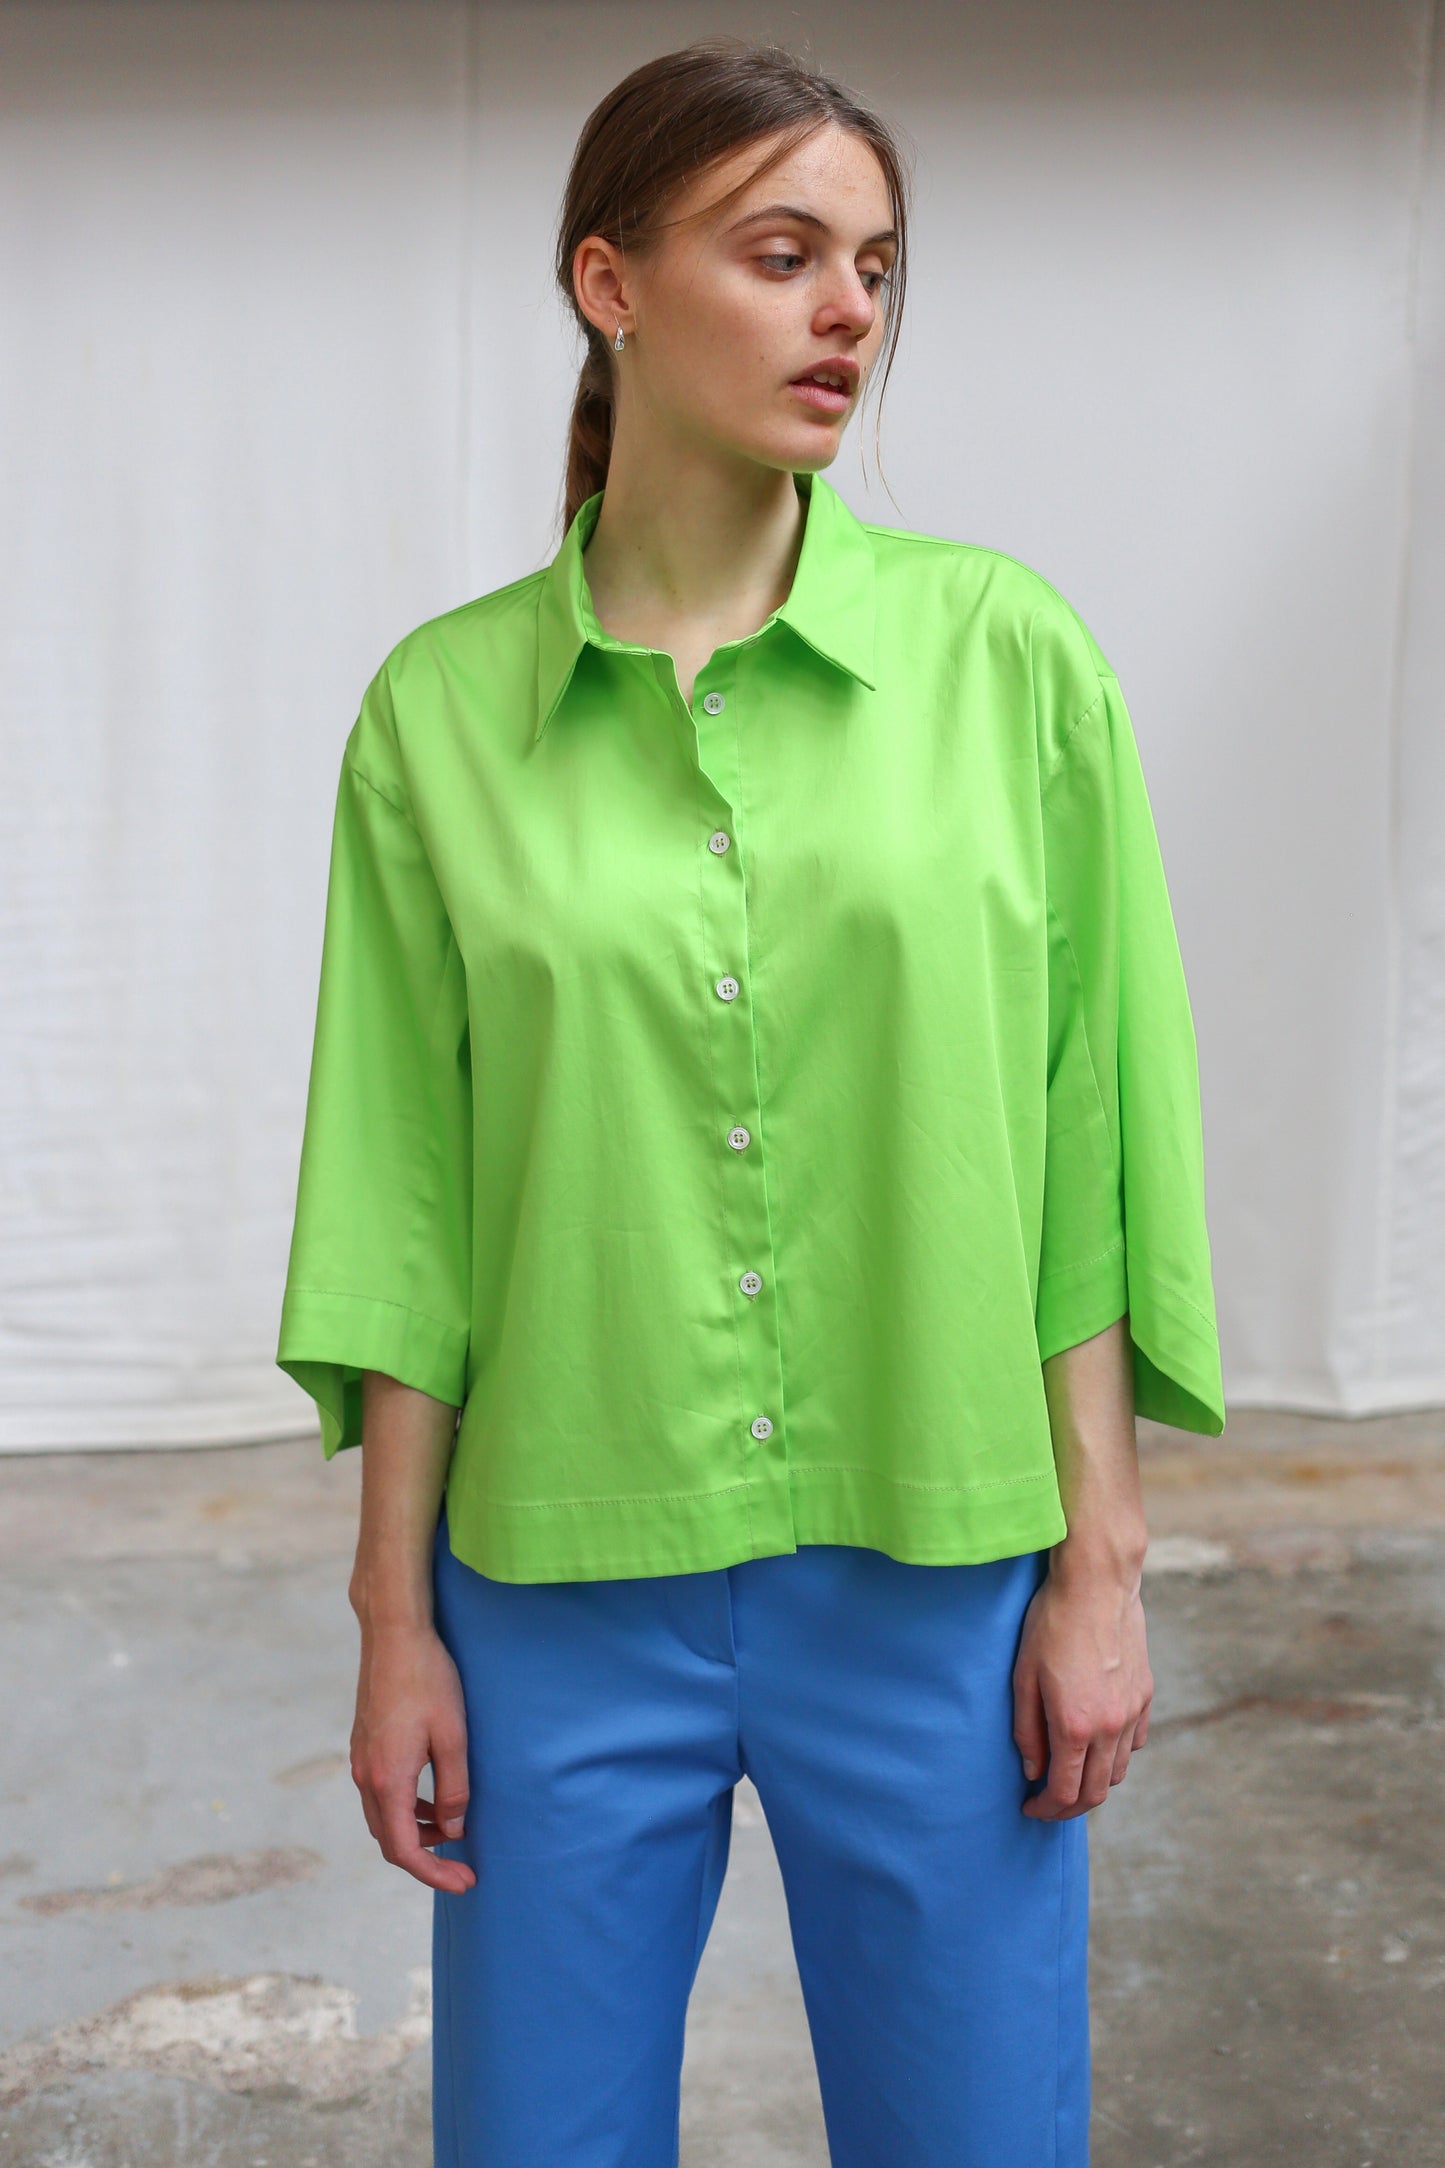 Alyza blouse in Fluogreen